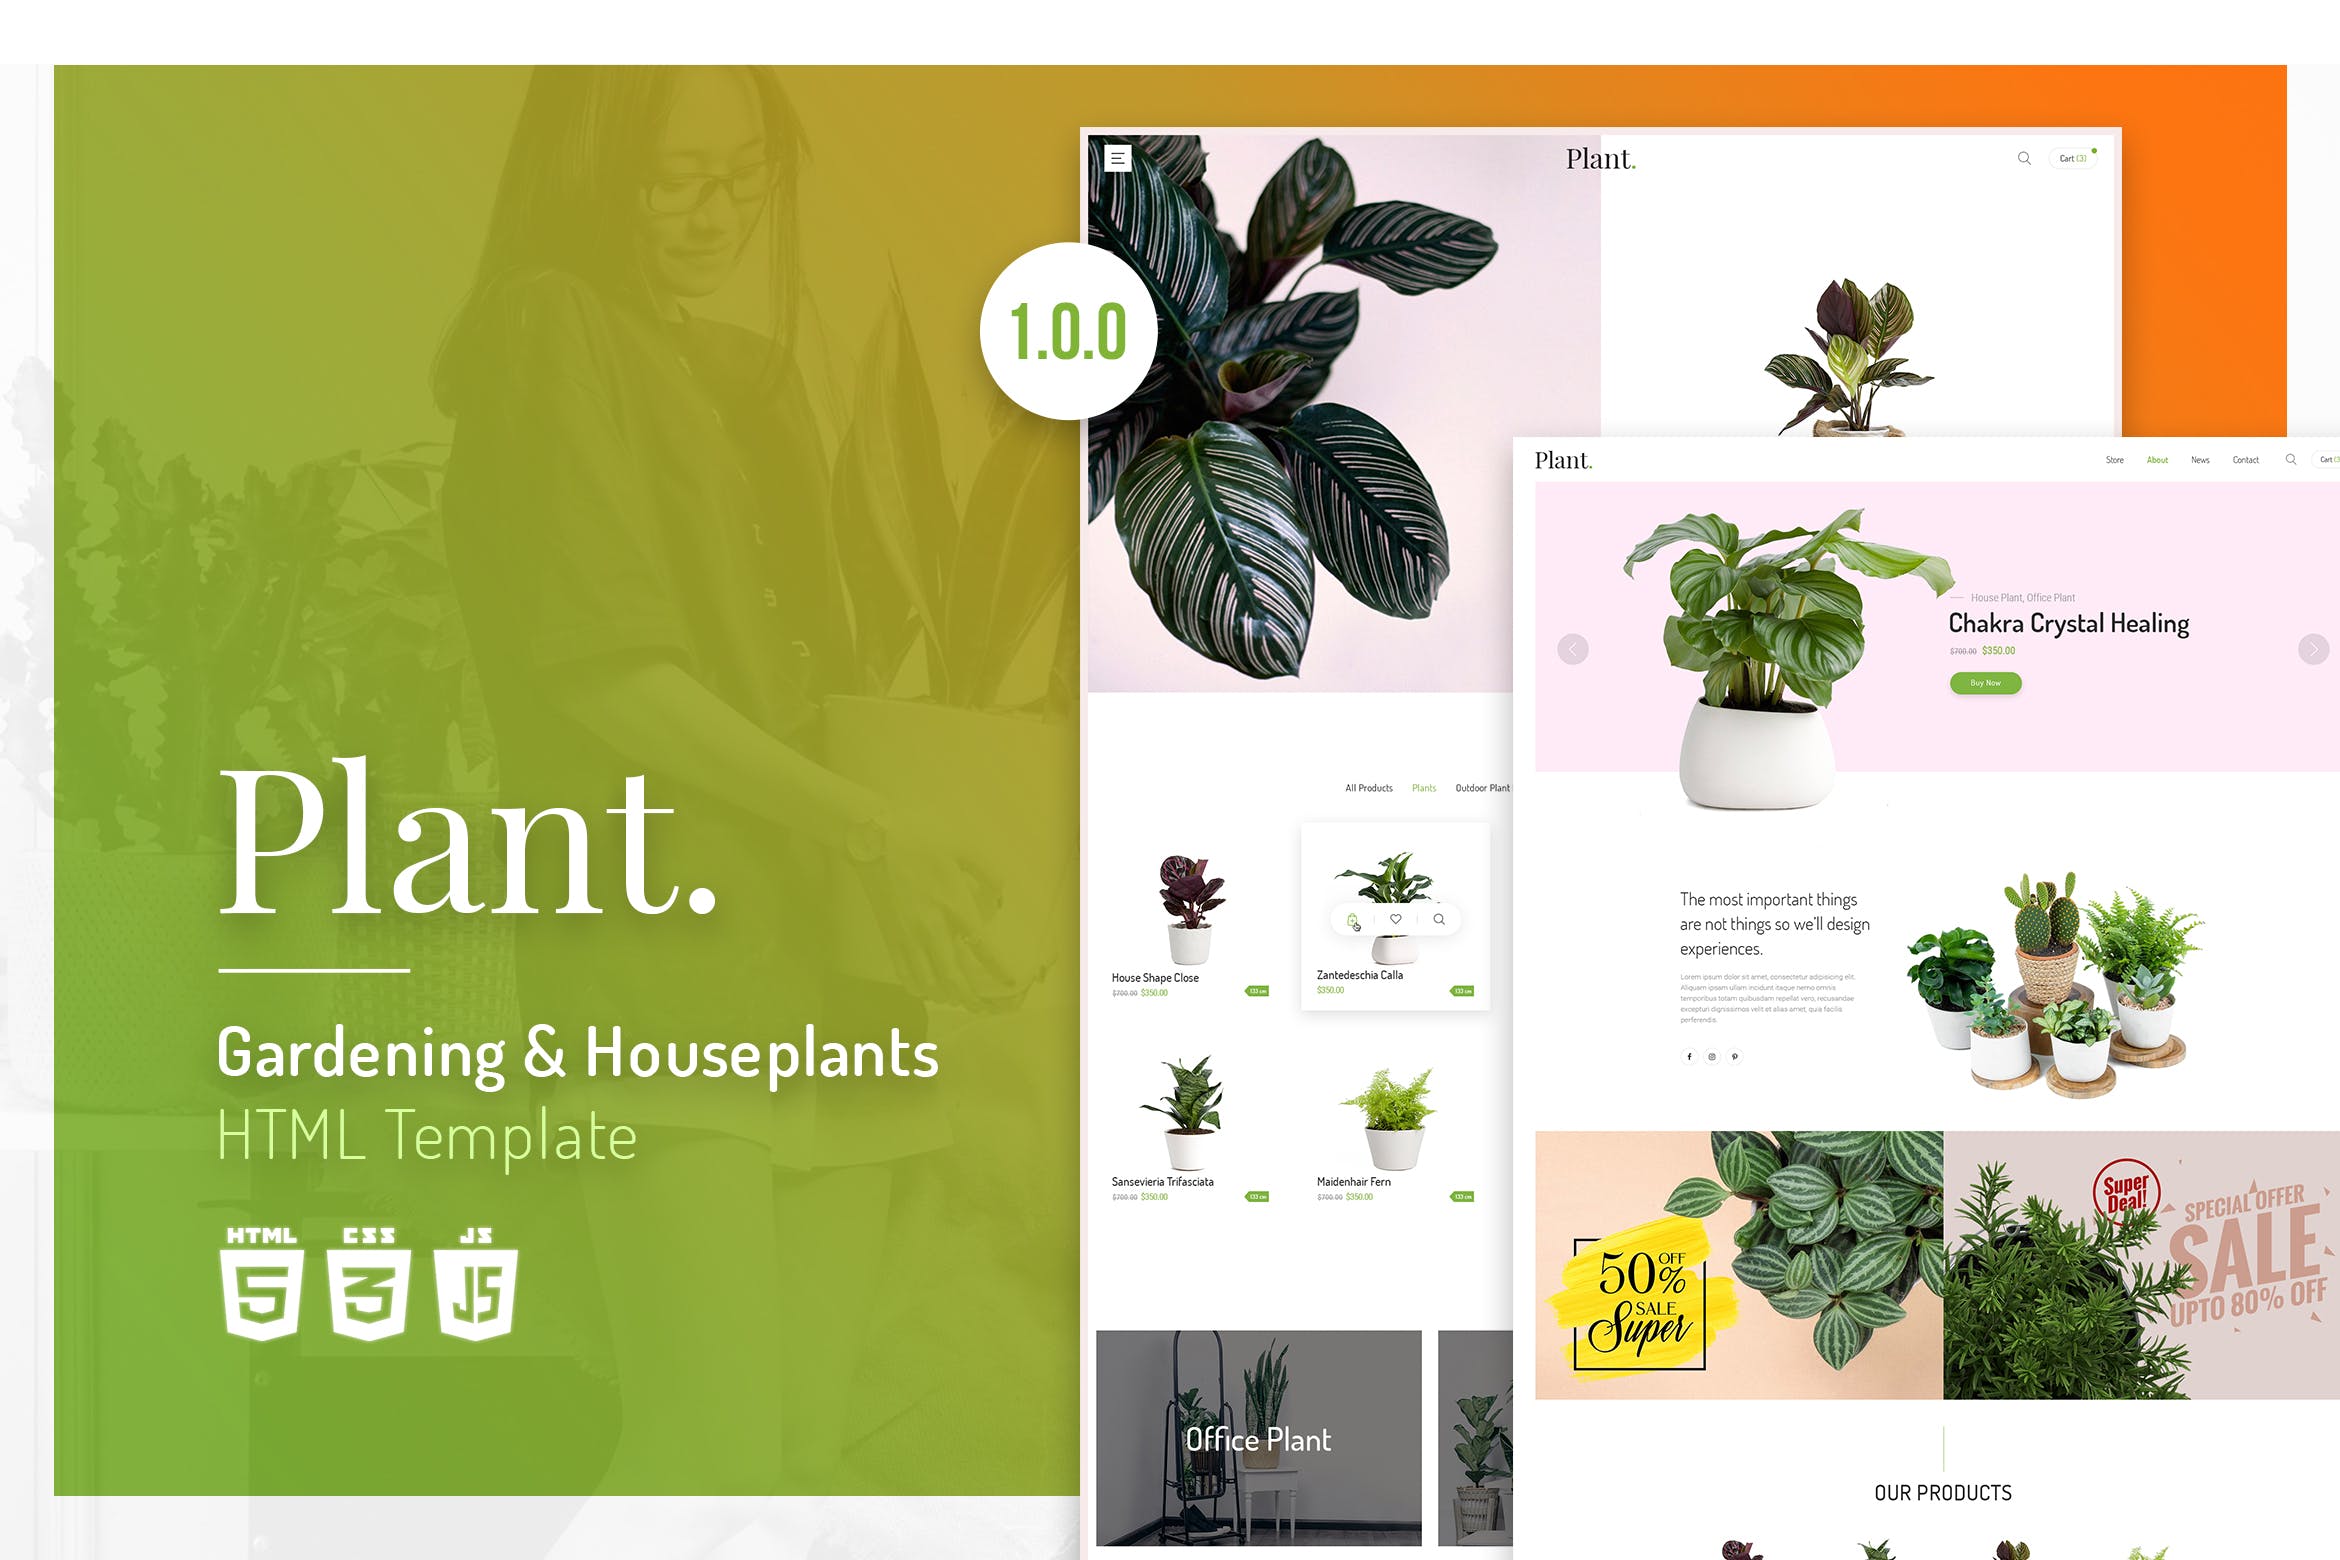 植物园艺设计/盆栽植物网上商城HTML模板16图库精选 Plant | Gardening & Houseplants HTML Template插图